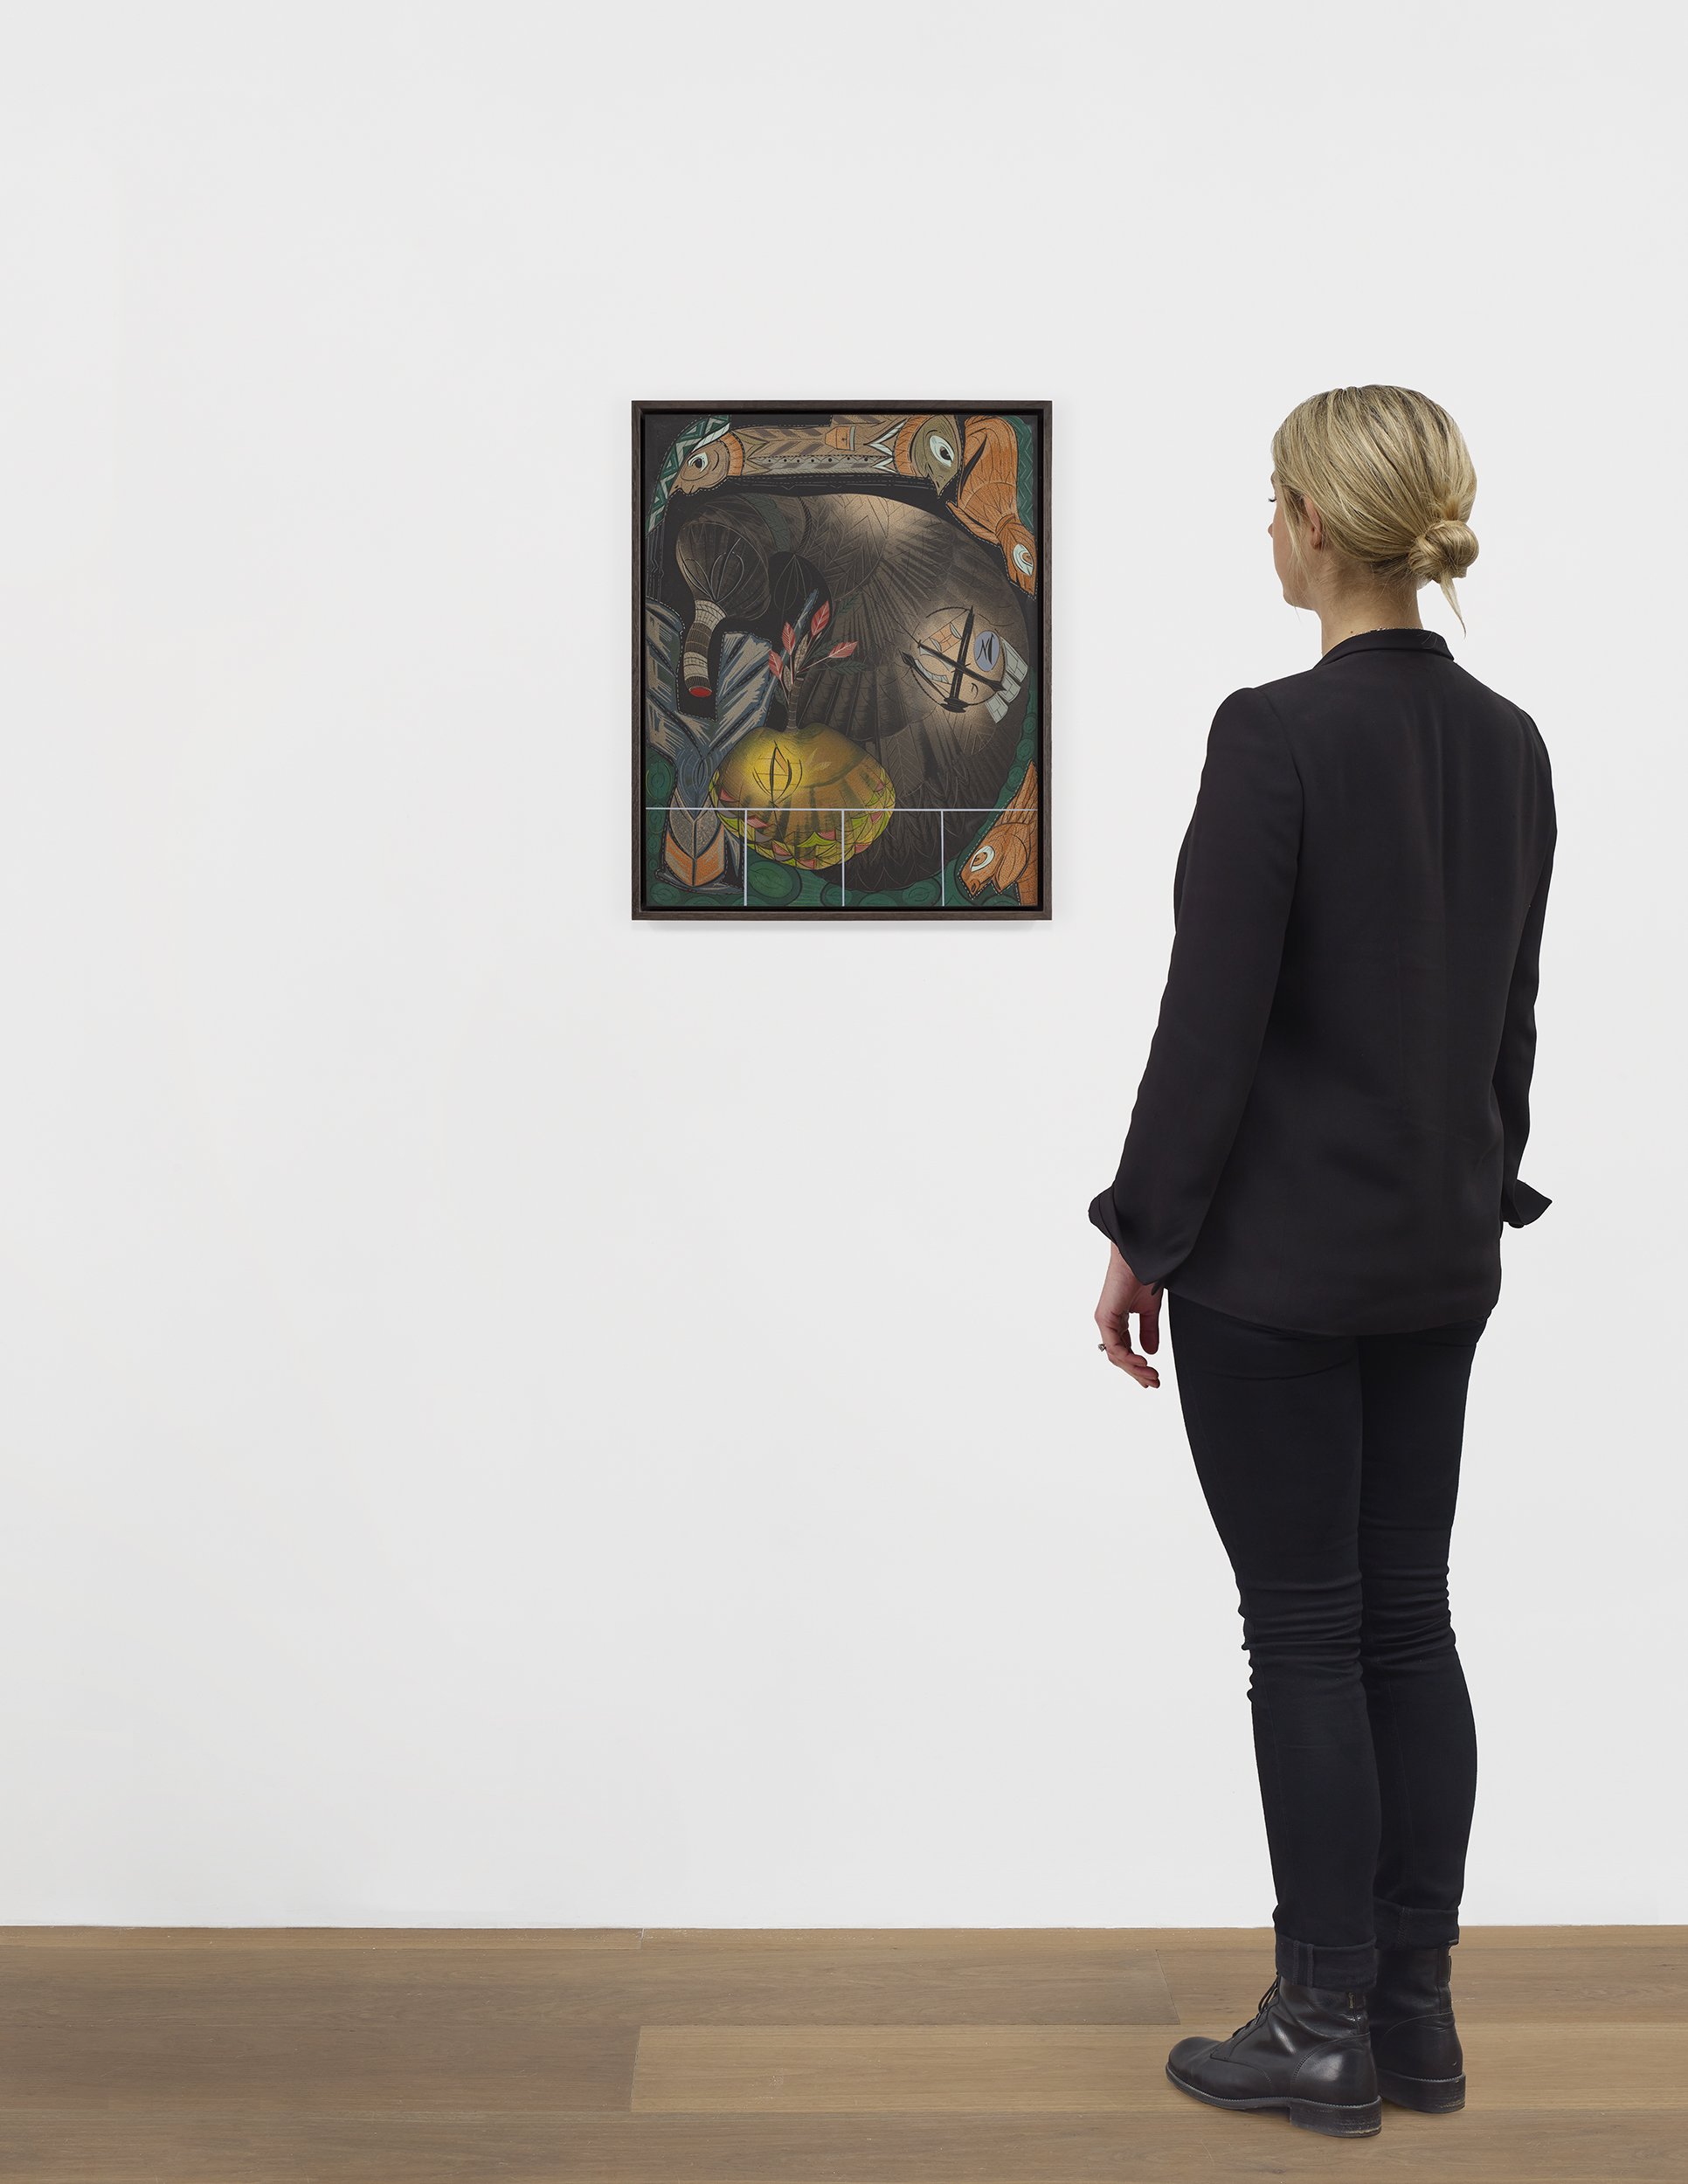 Scale view of Lari Pittman's painting Diorama 13